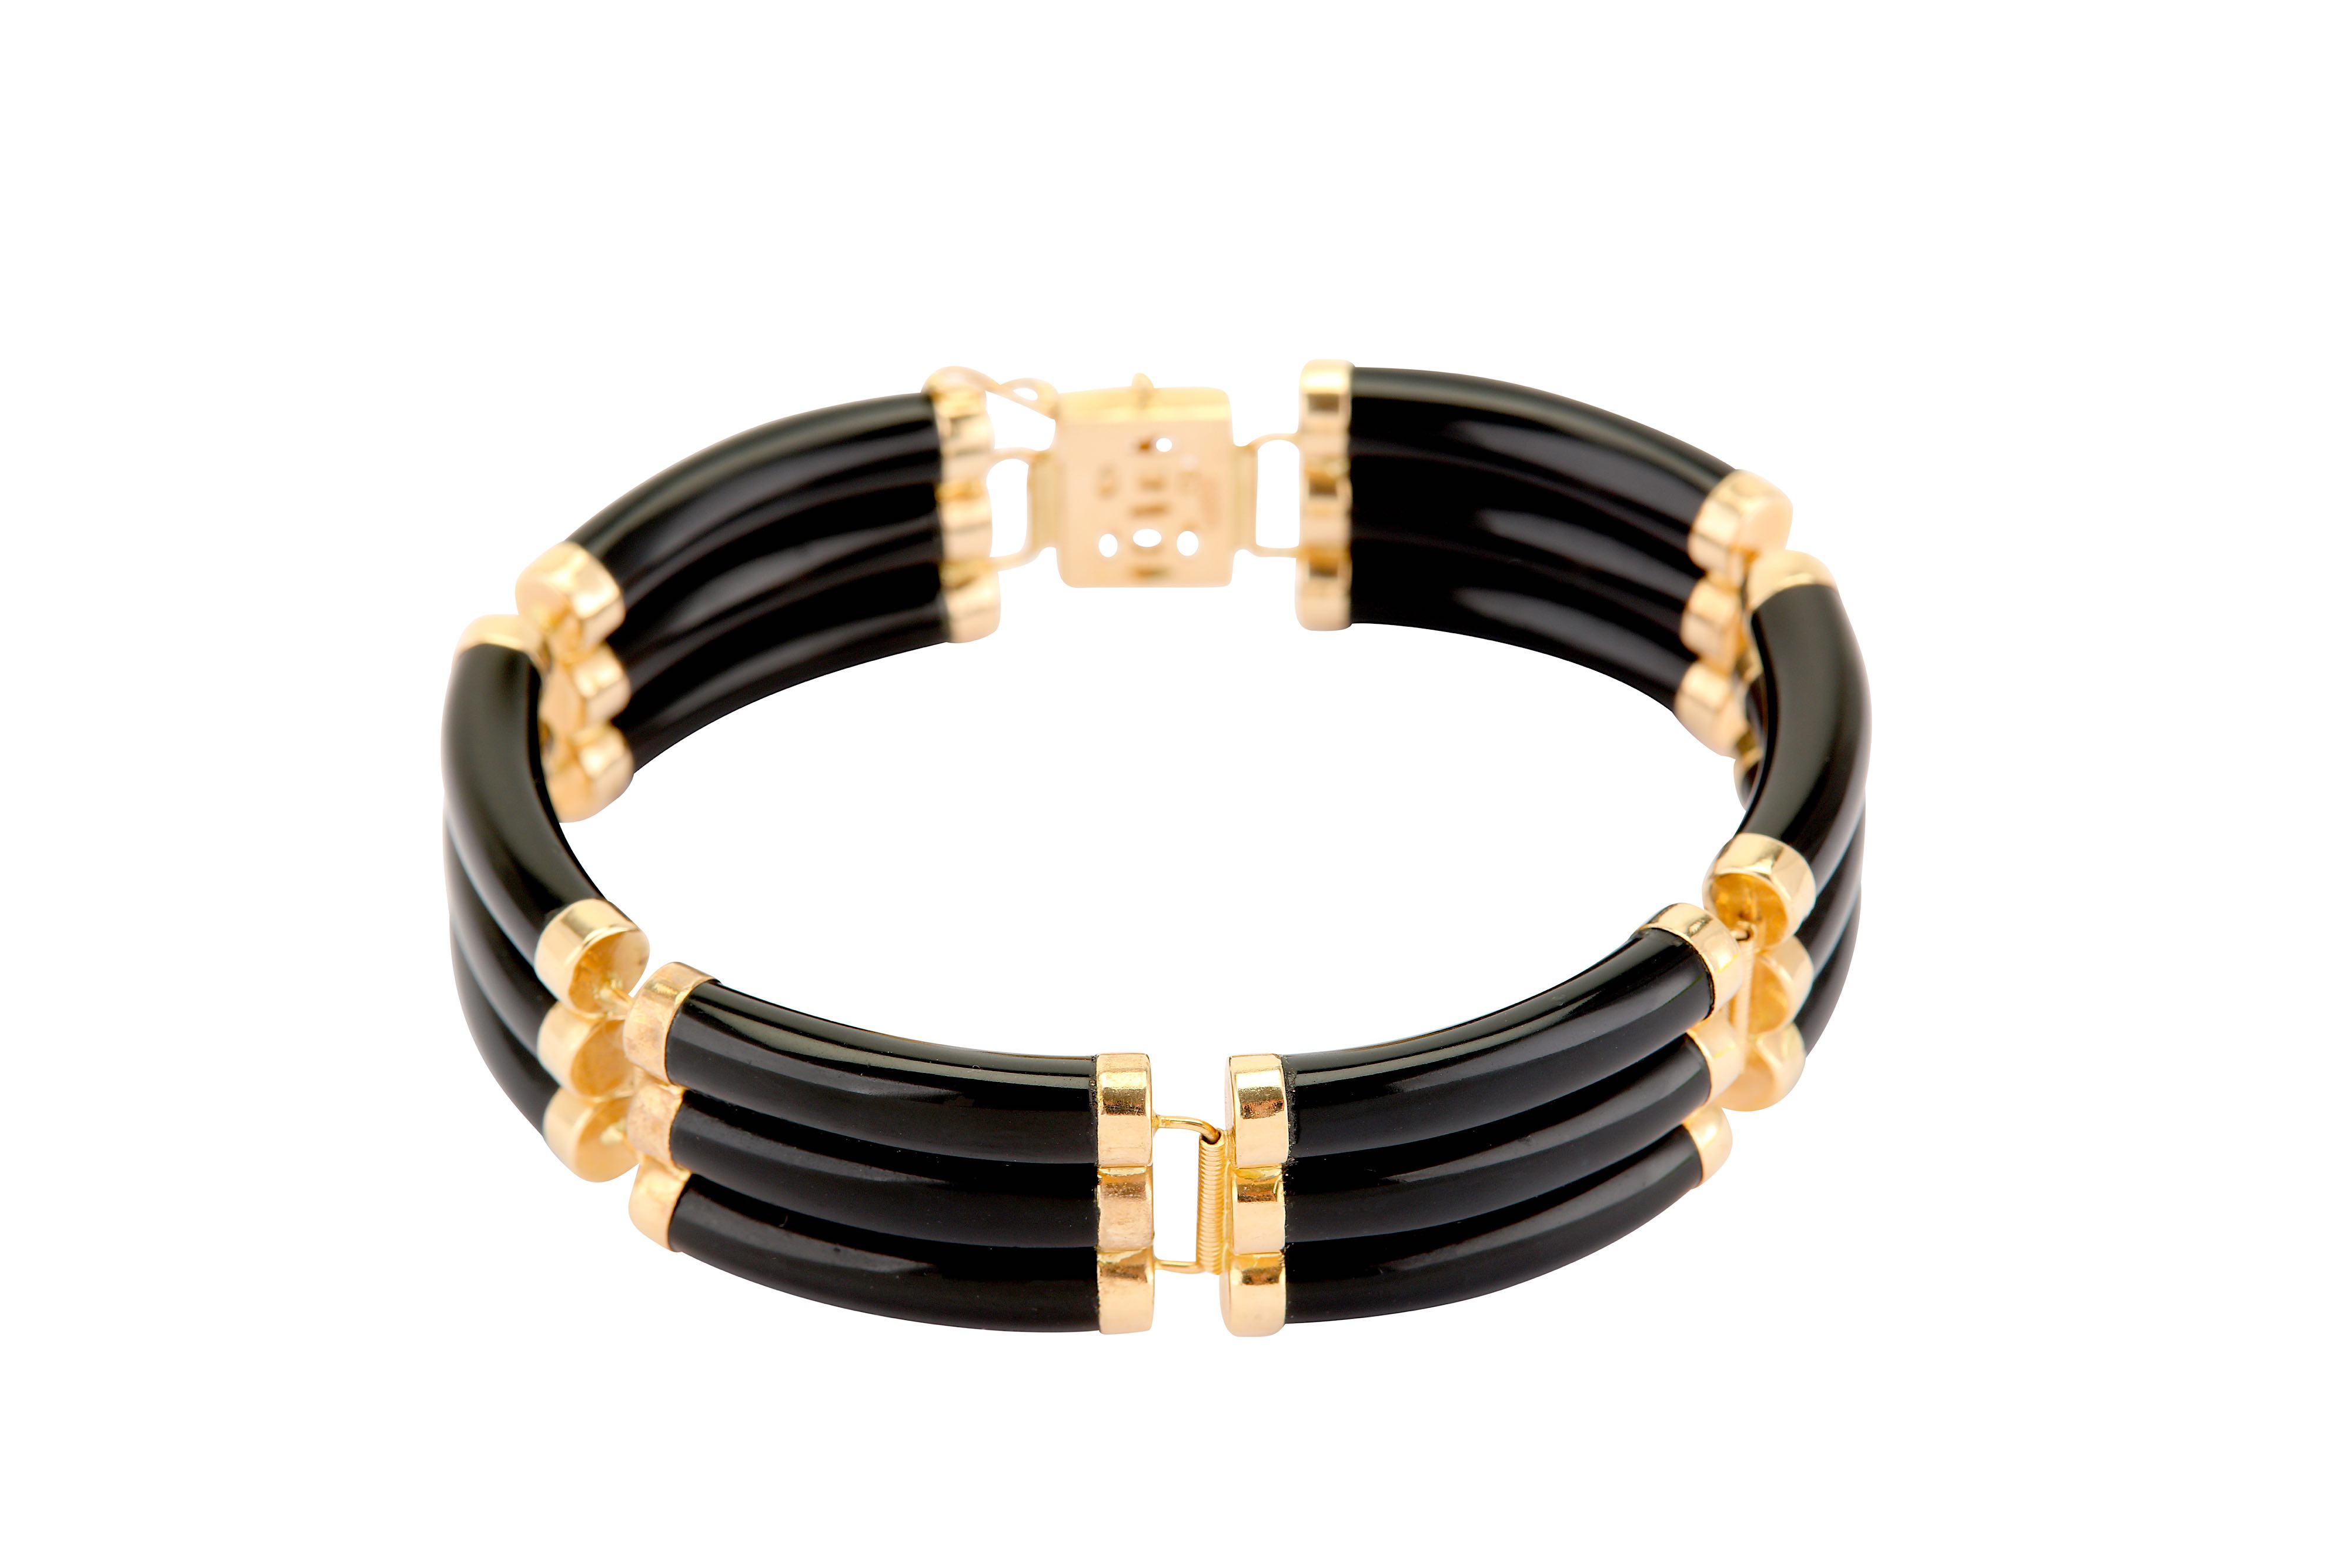 An onyx bracelet